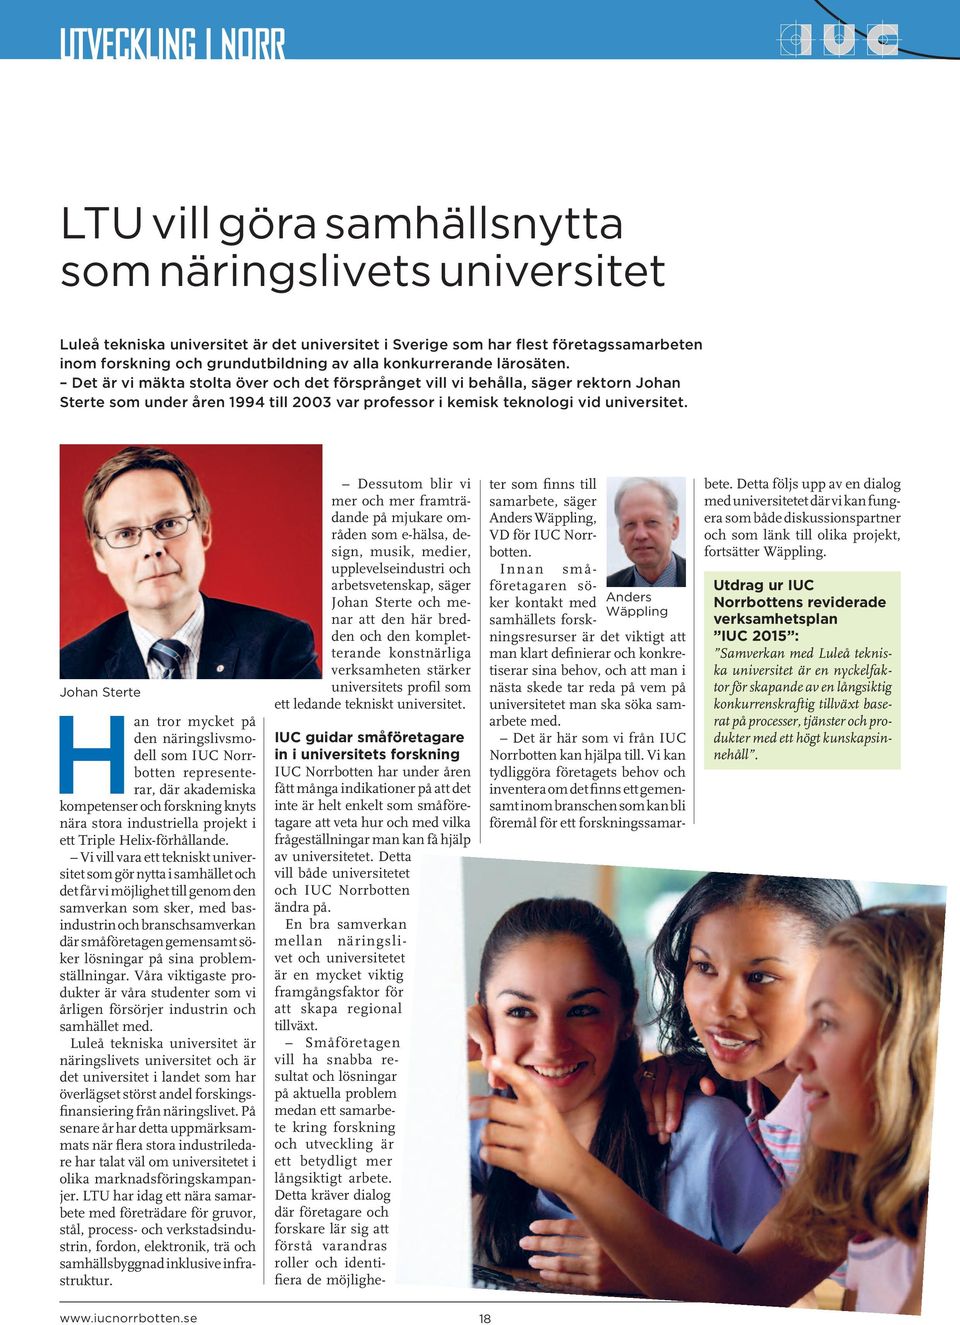 Johan Sterte Han tror mycket på den näringslivsmodell som IUC Norrbotten representerar, där akademiska kompetenser och forskning knyts nära stora industriella projekt i ett Triple Helix-förhållande.